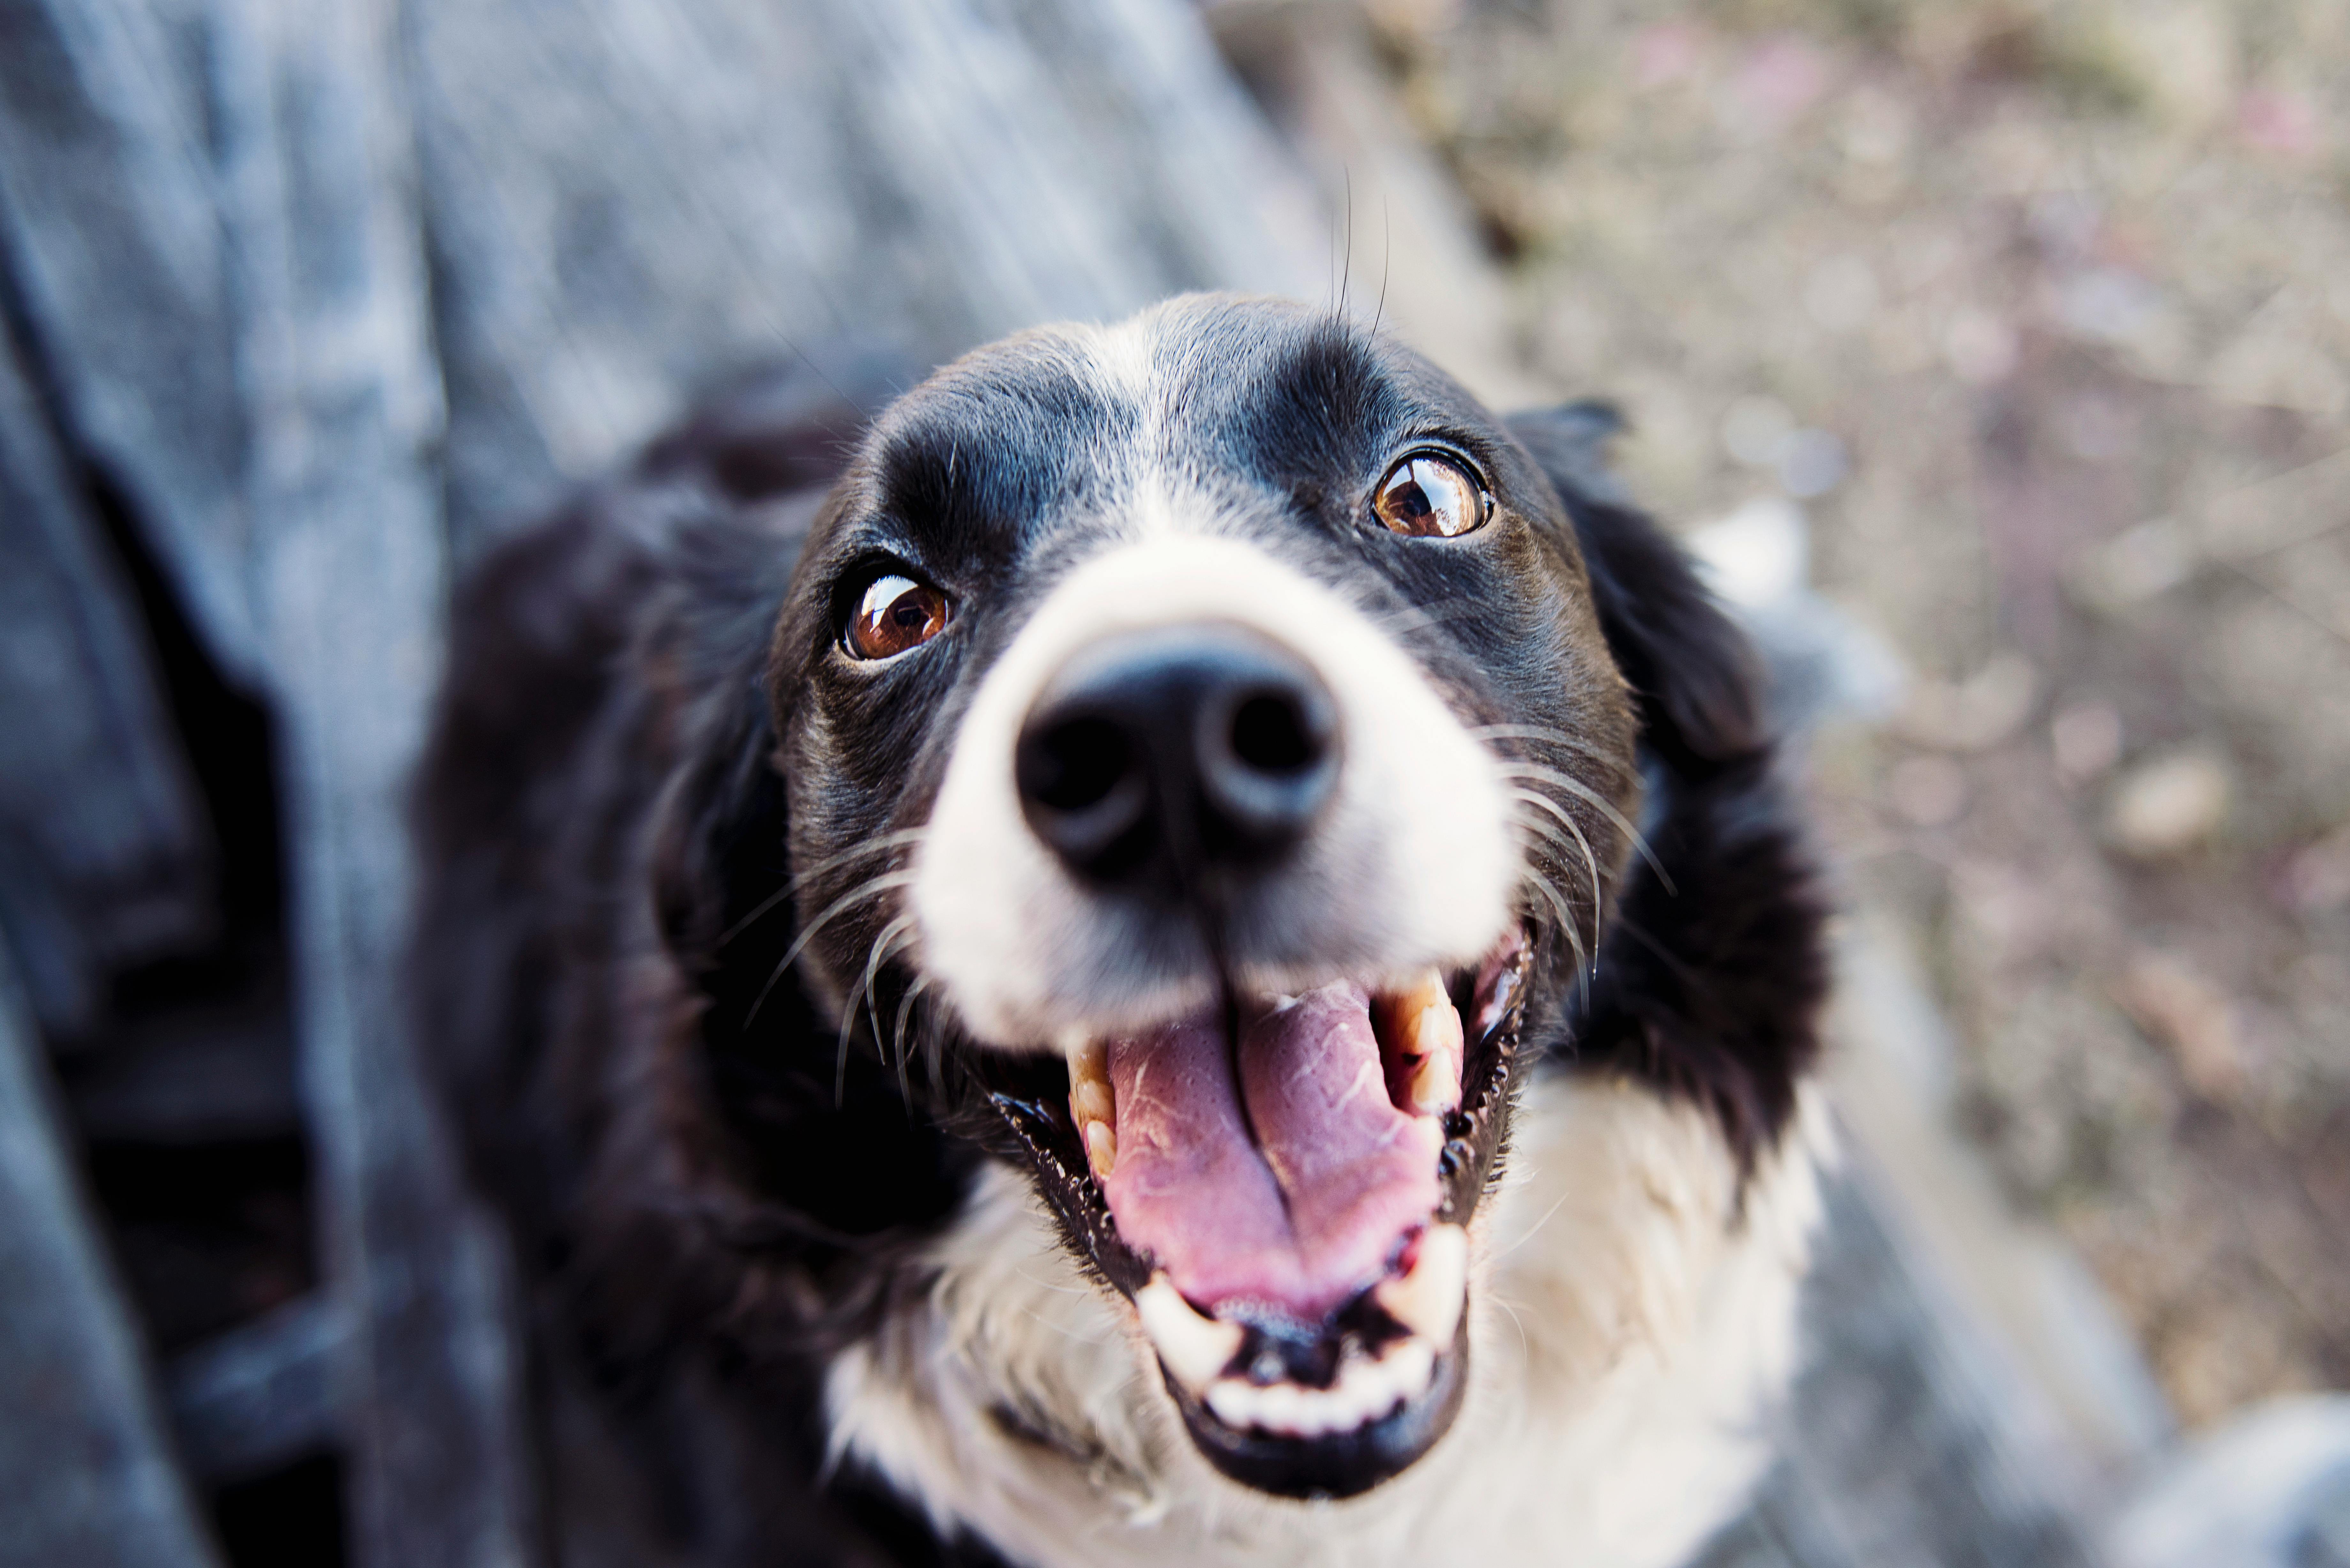 Canine Comeback? KNINE Brushes Off 50% Loss, Gets Listed On Major Exchange